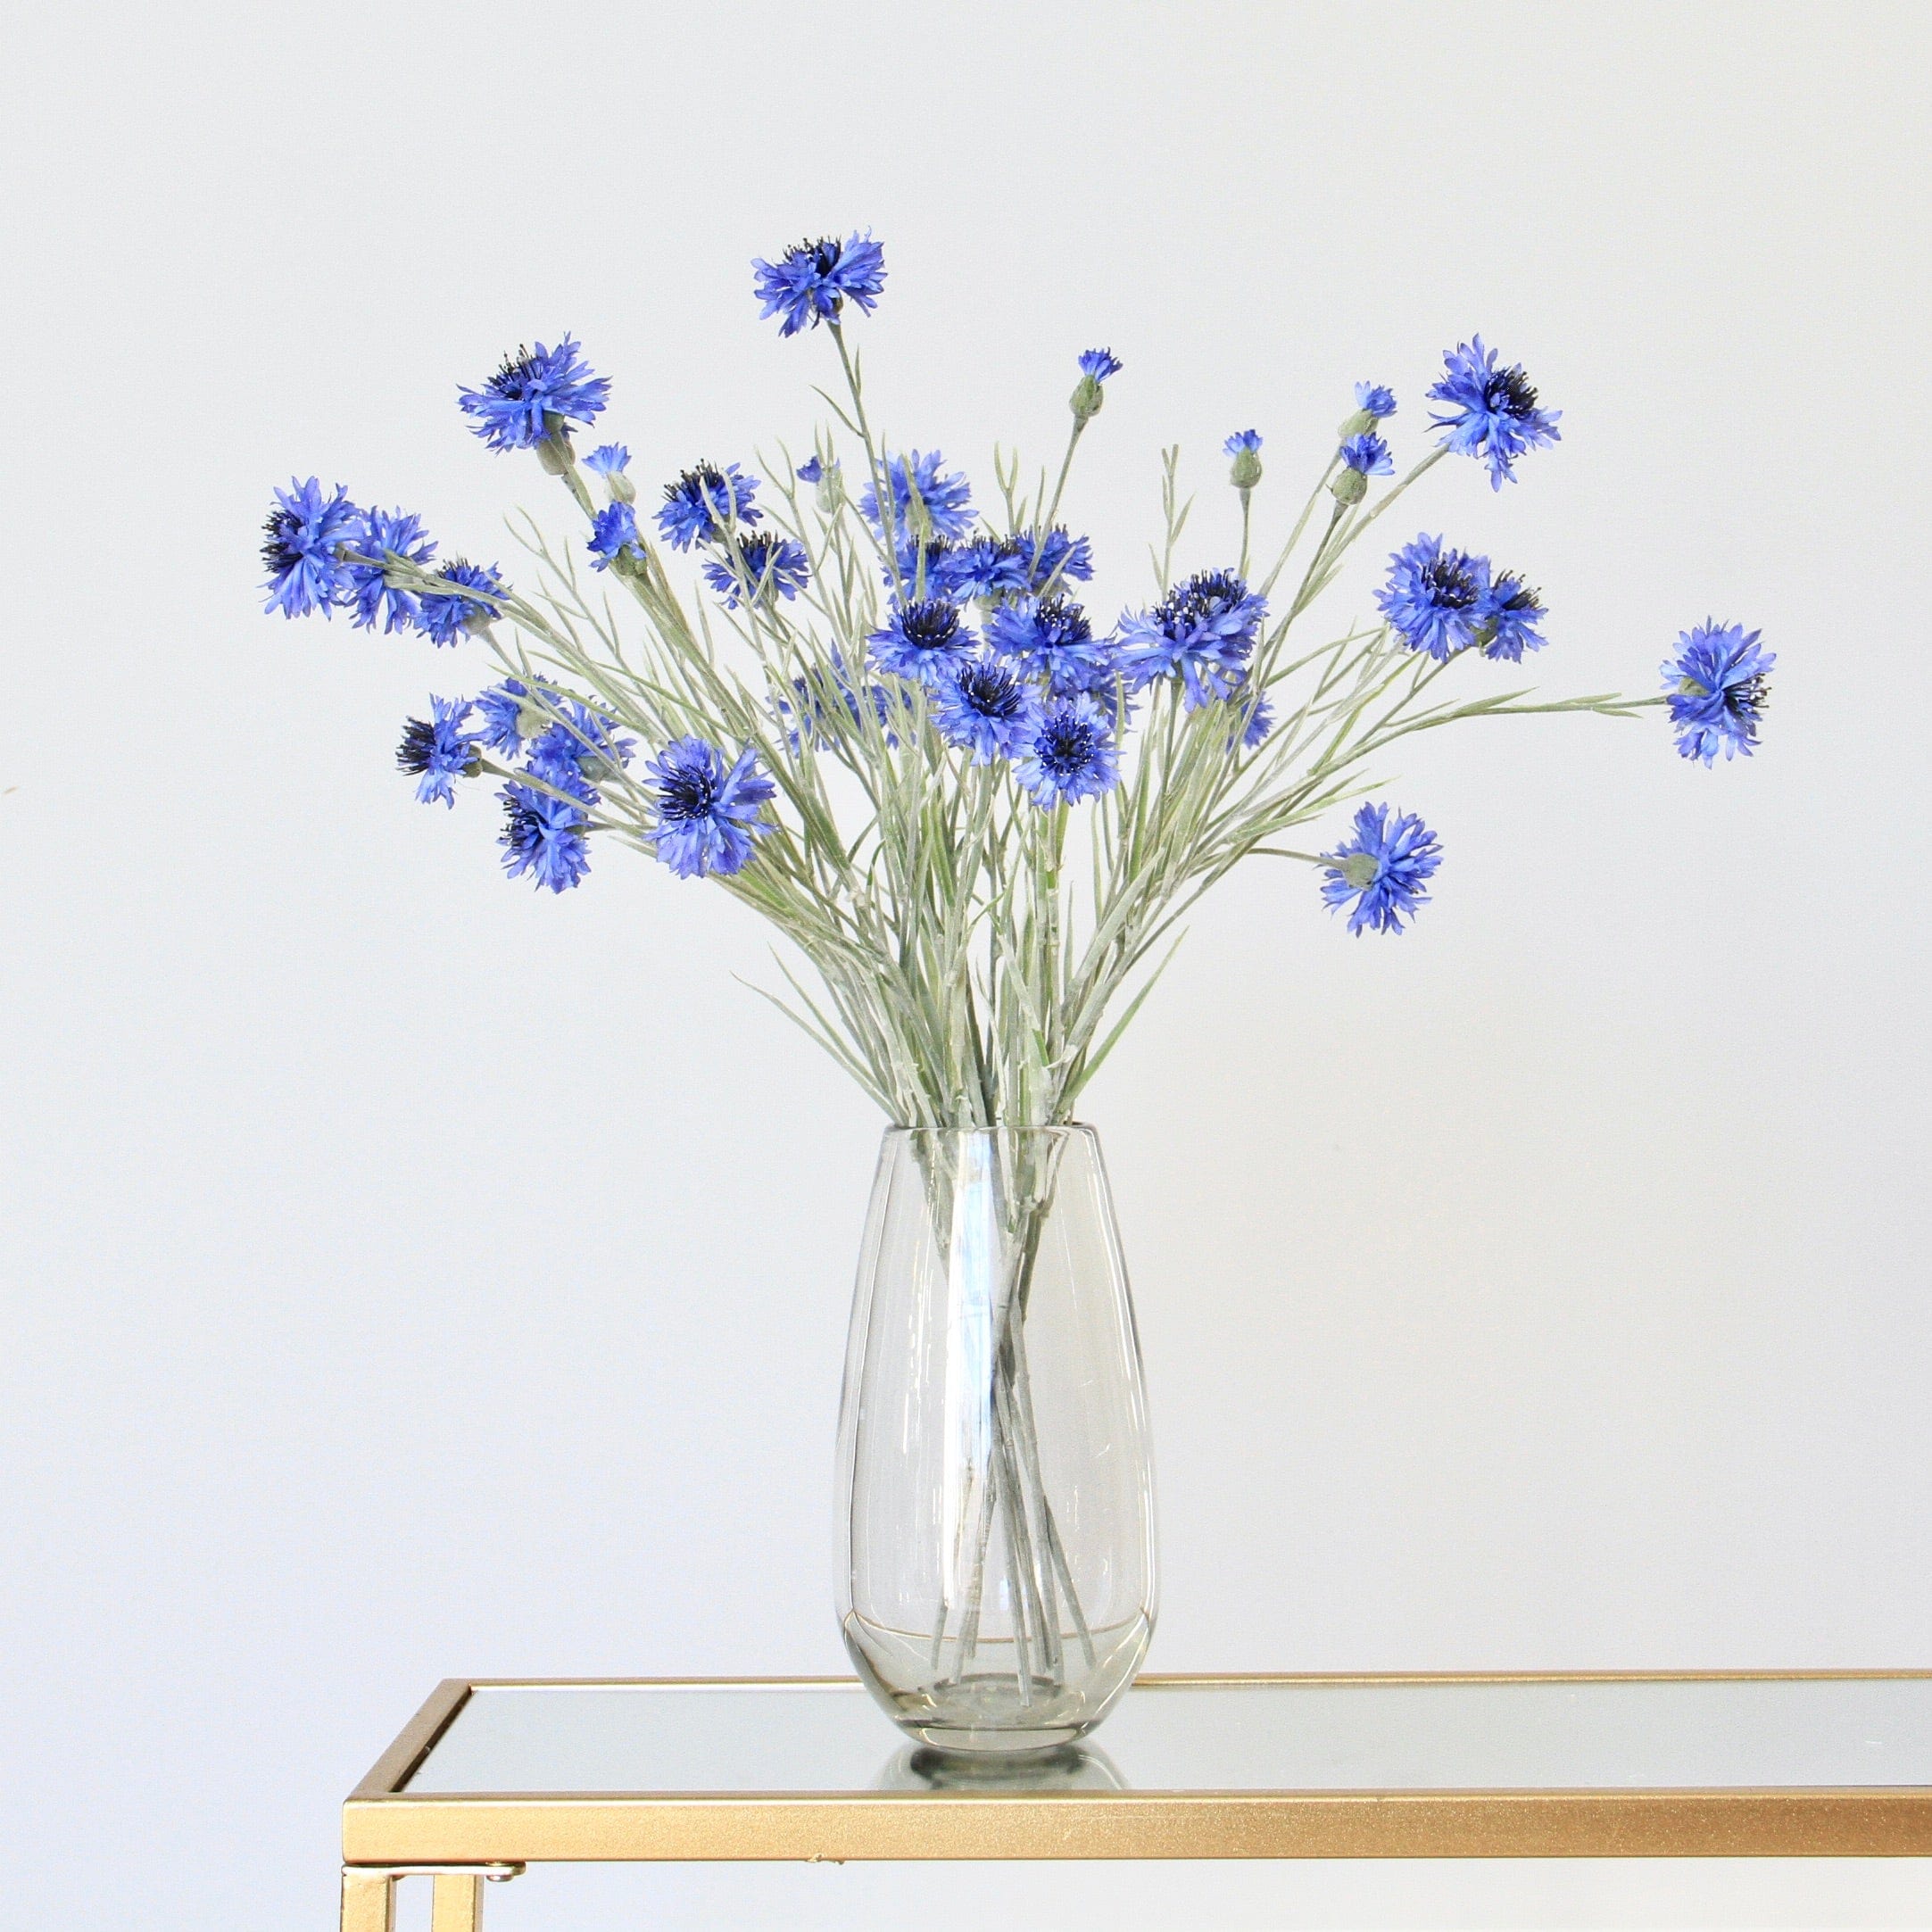 Artificial flowers luxury faux silk Blue Cornflower lifelike realistic faux flowers buy online from Amaranthine Blooms UK